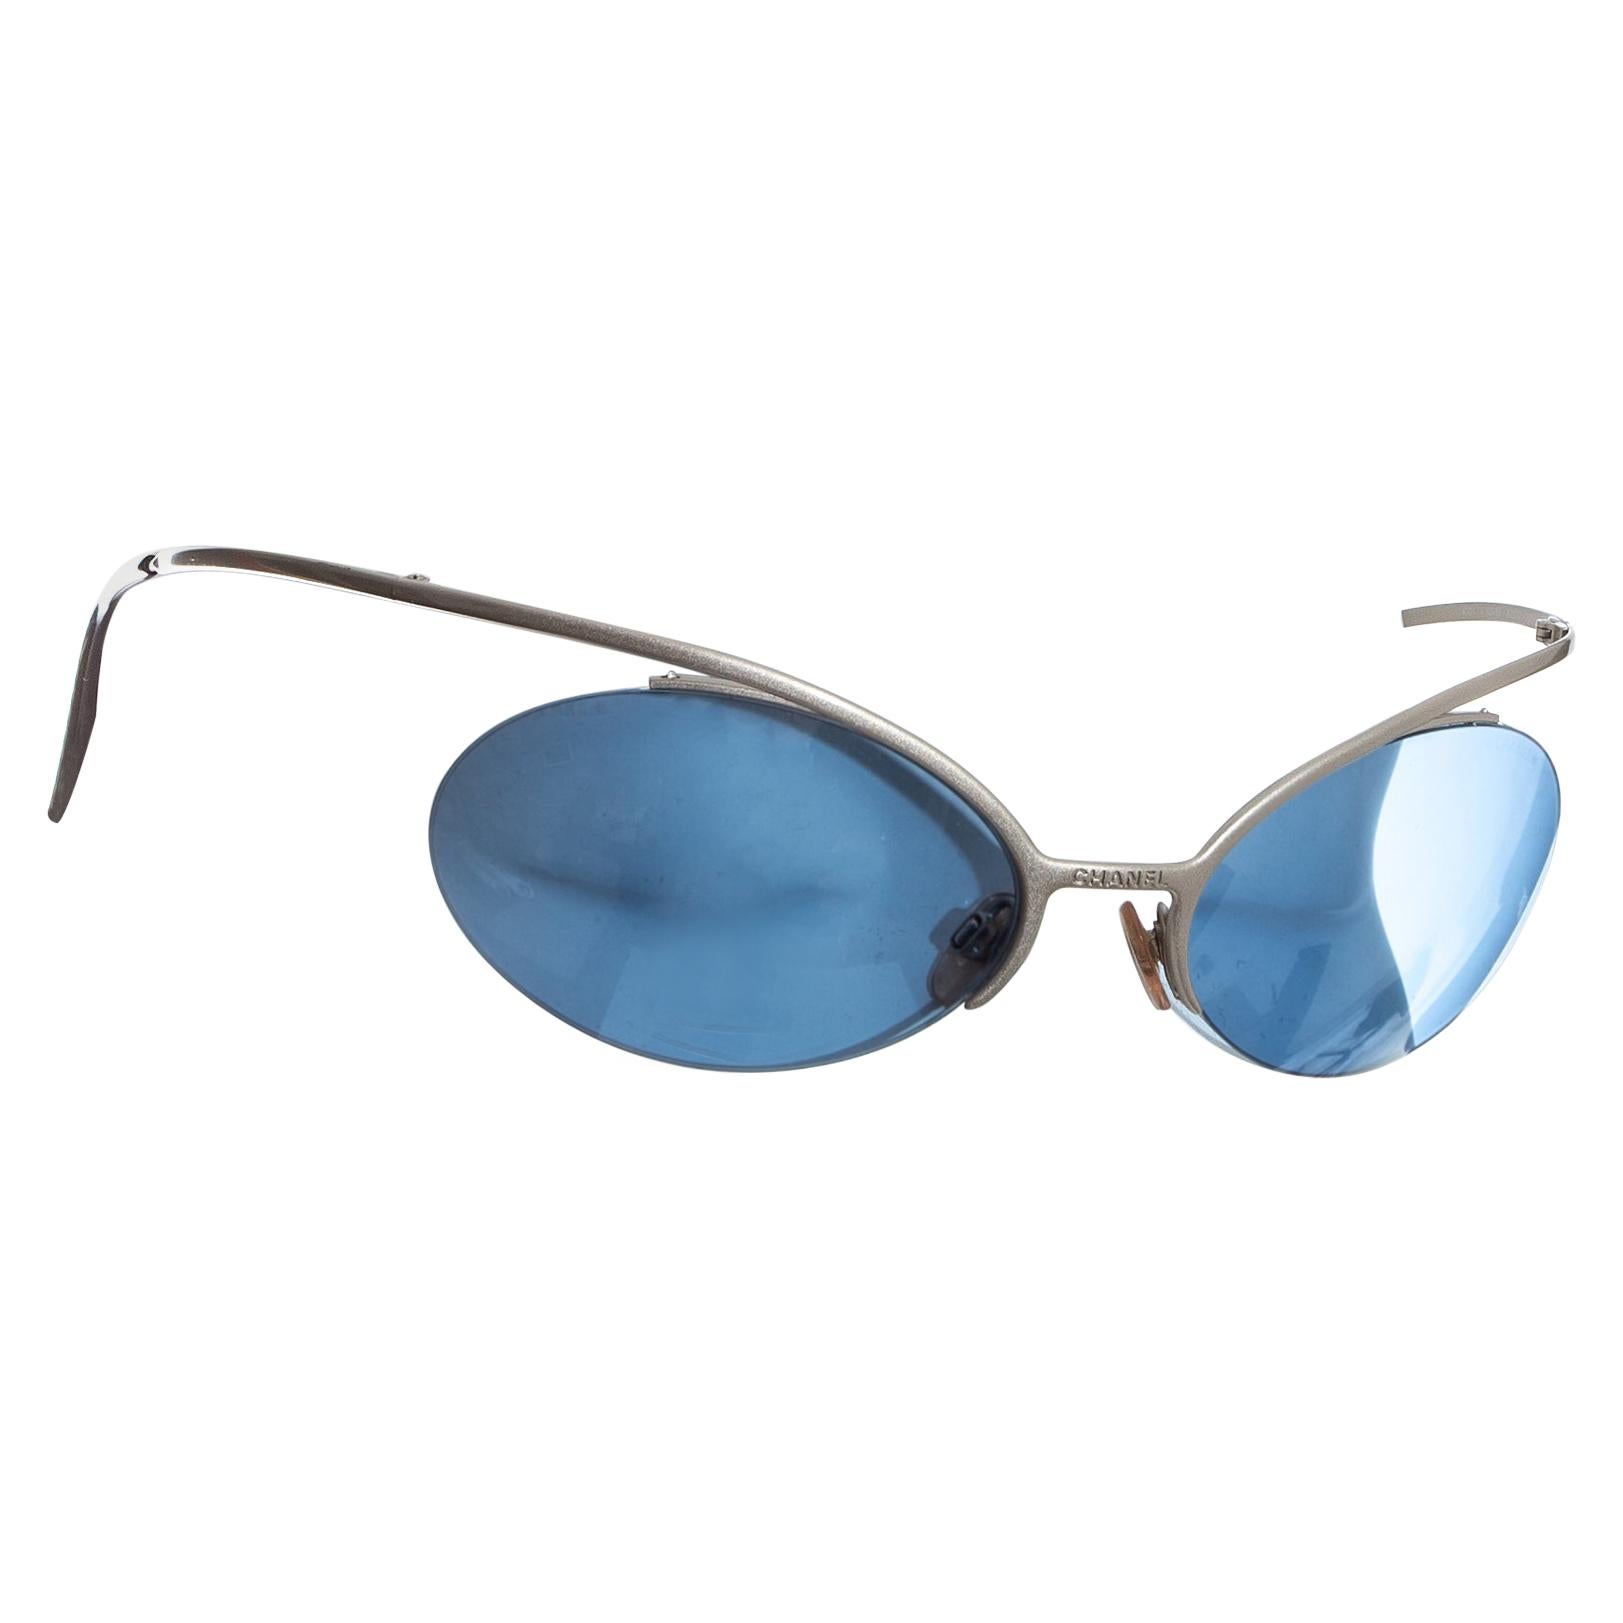 Chanel by Karl Lagerfeld Silberne Sonnenbrille mit blauen Gläsern, SS 2000